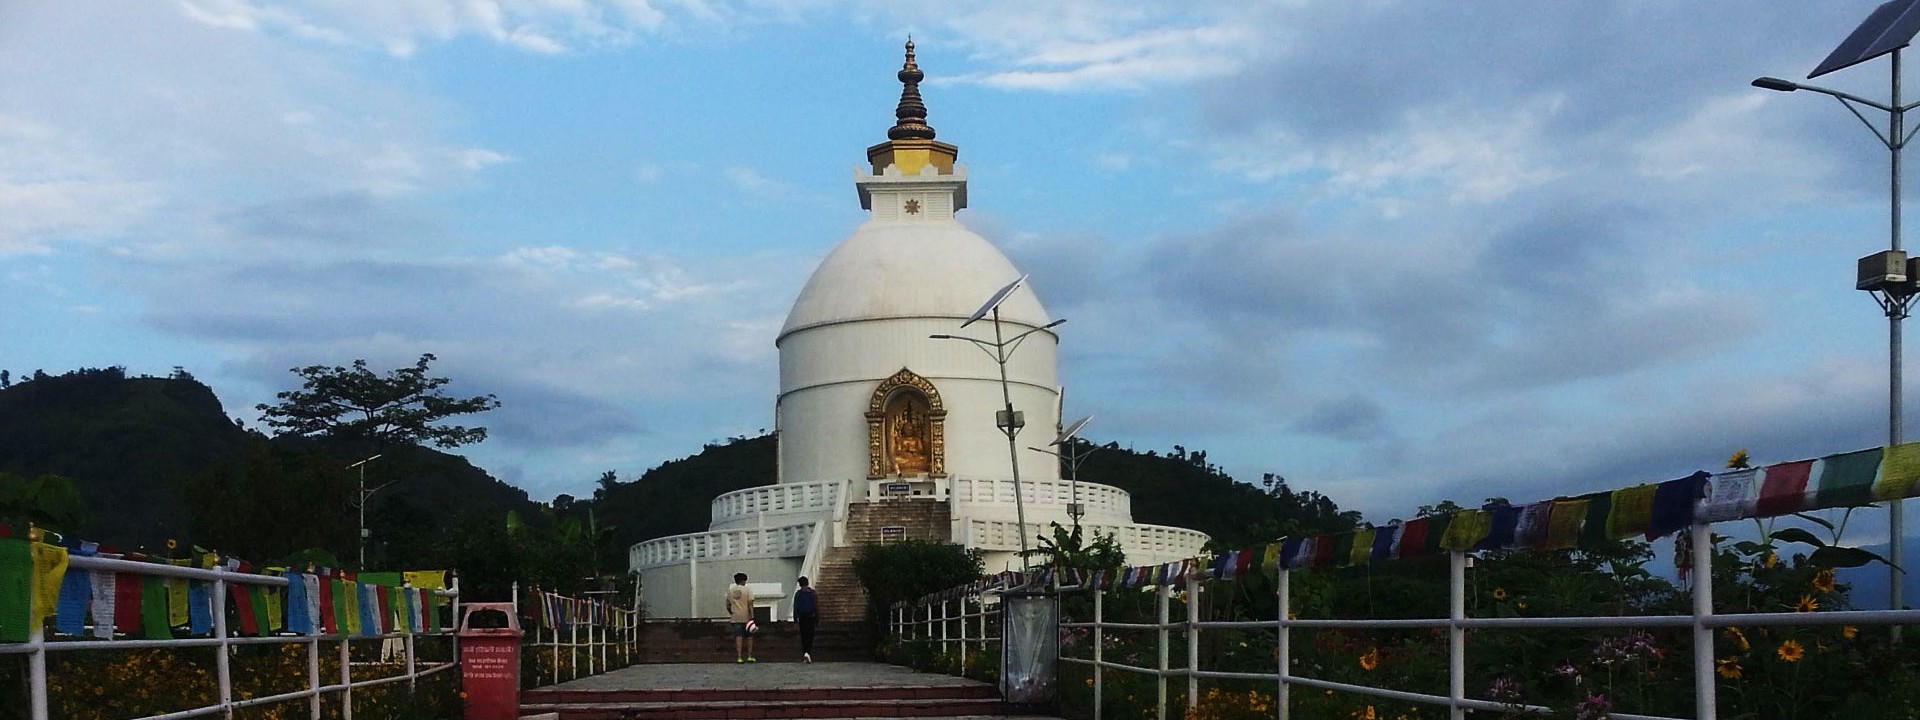 World Peace Pagoda Pokhara